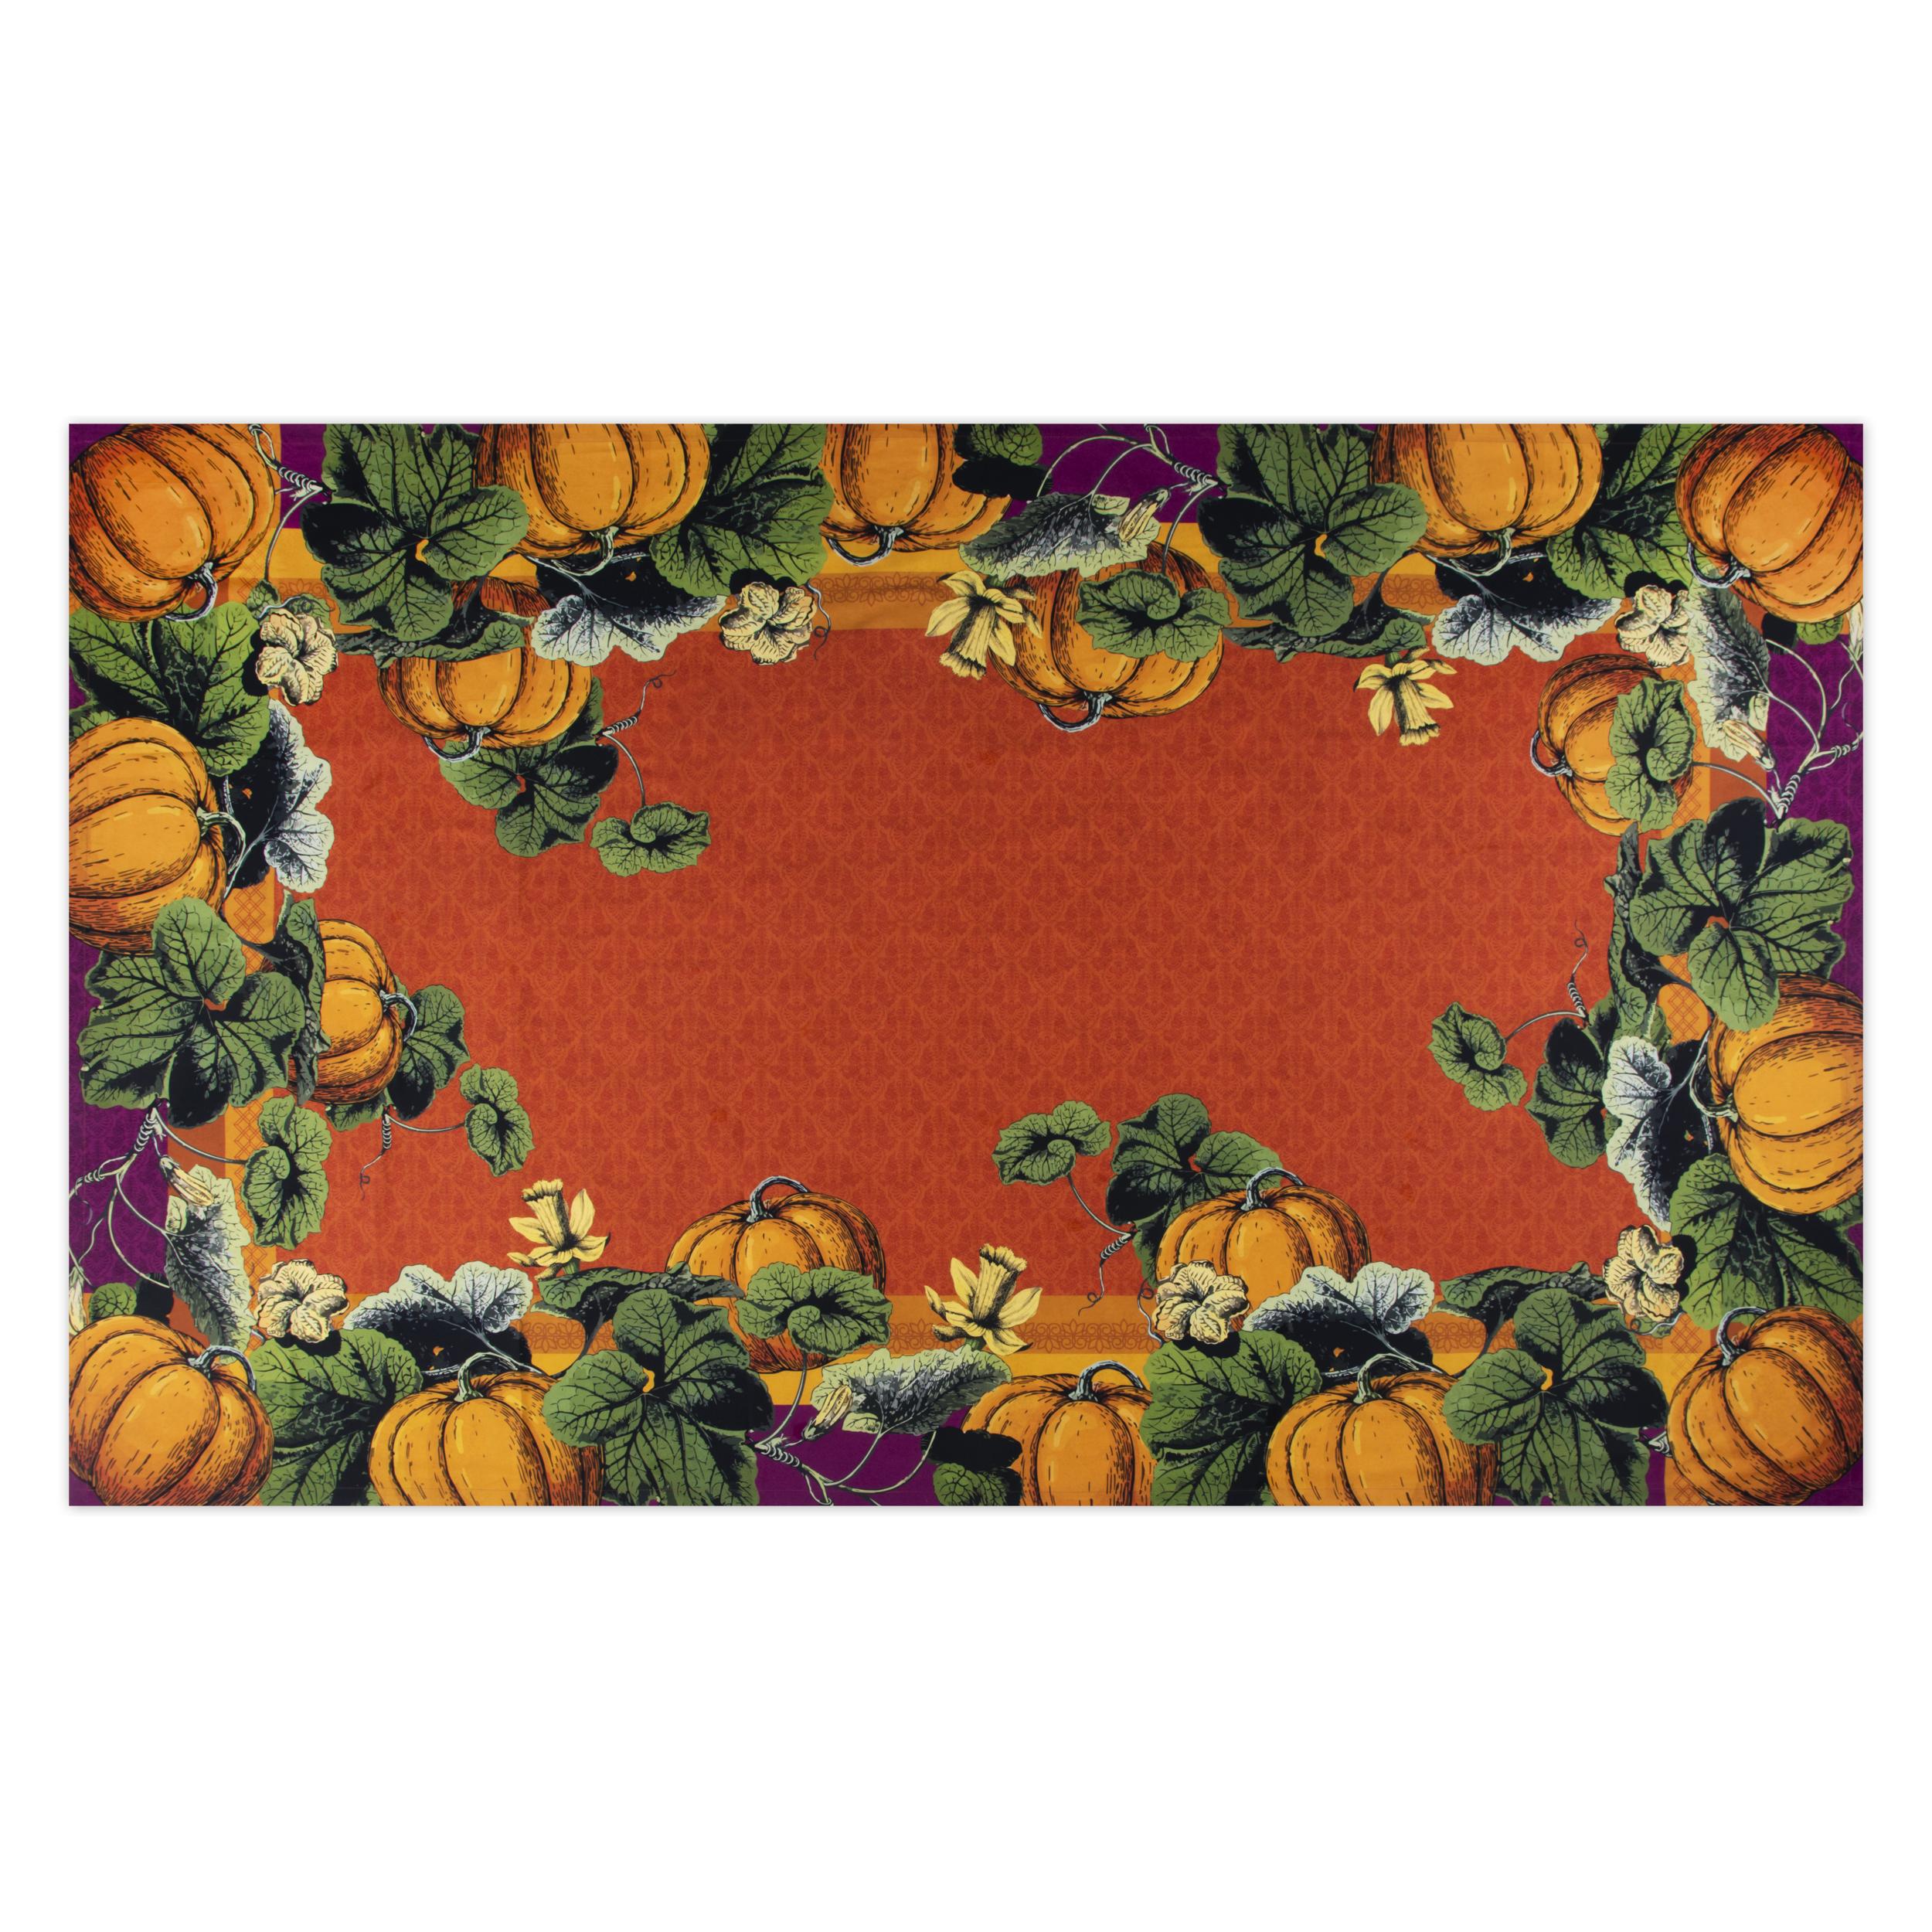 Tovaglia rettangolare Excelsa Pumpkin, 100% cotone drill multicolore, 150 x 250 cm